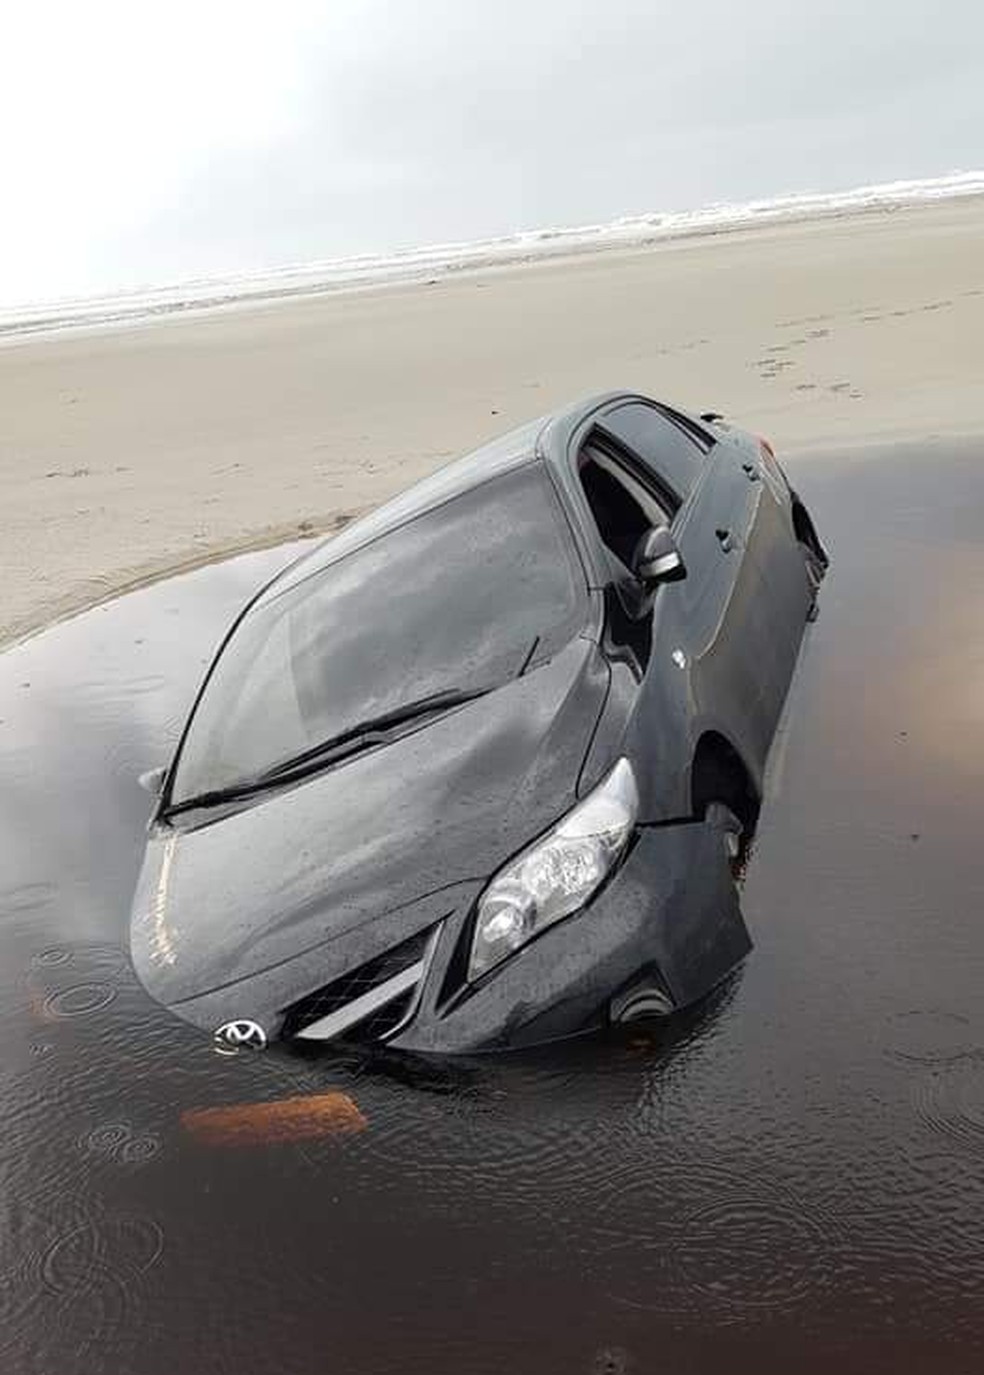 Carro atolado na faixa de areia foi tomado pelo mar em Ilha Comprida, SP — Foto: Arquivo pessoal/José Soares Bender